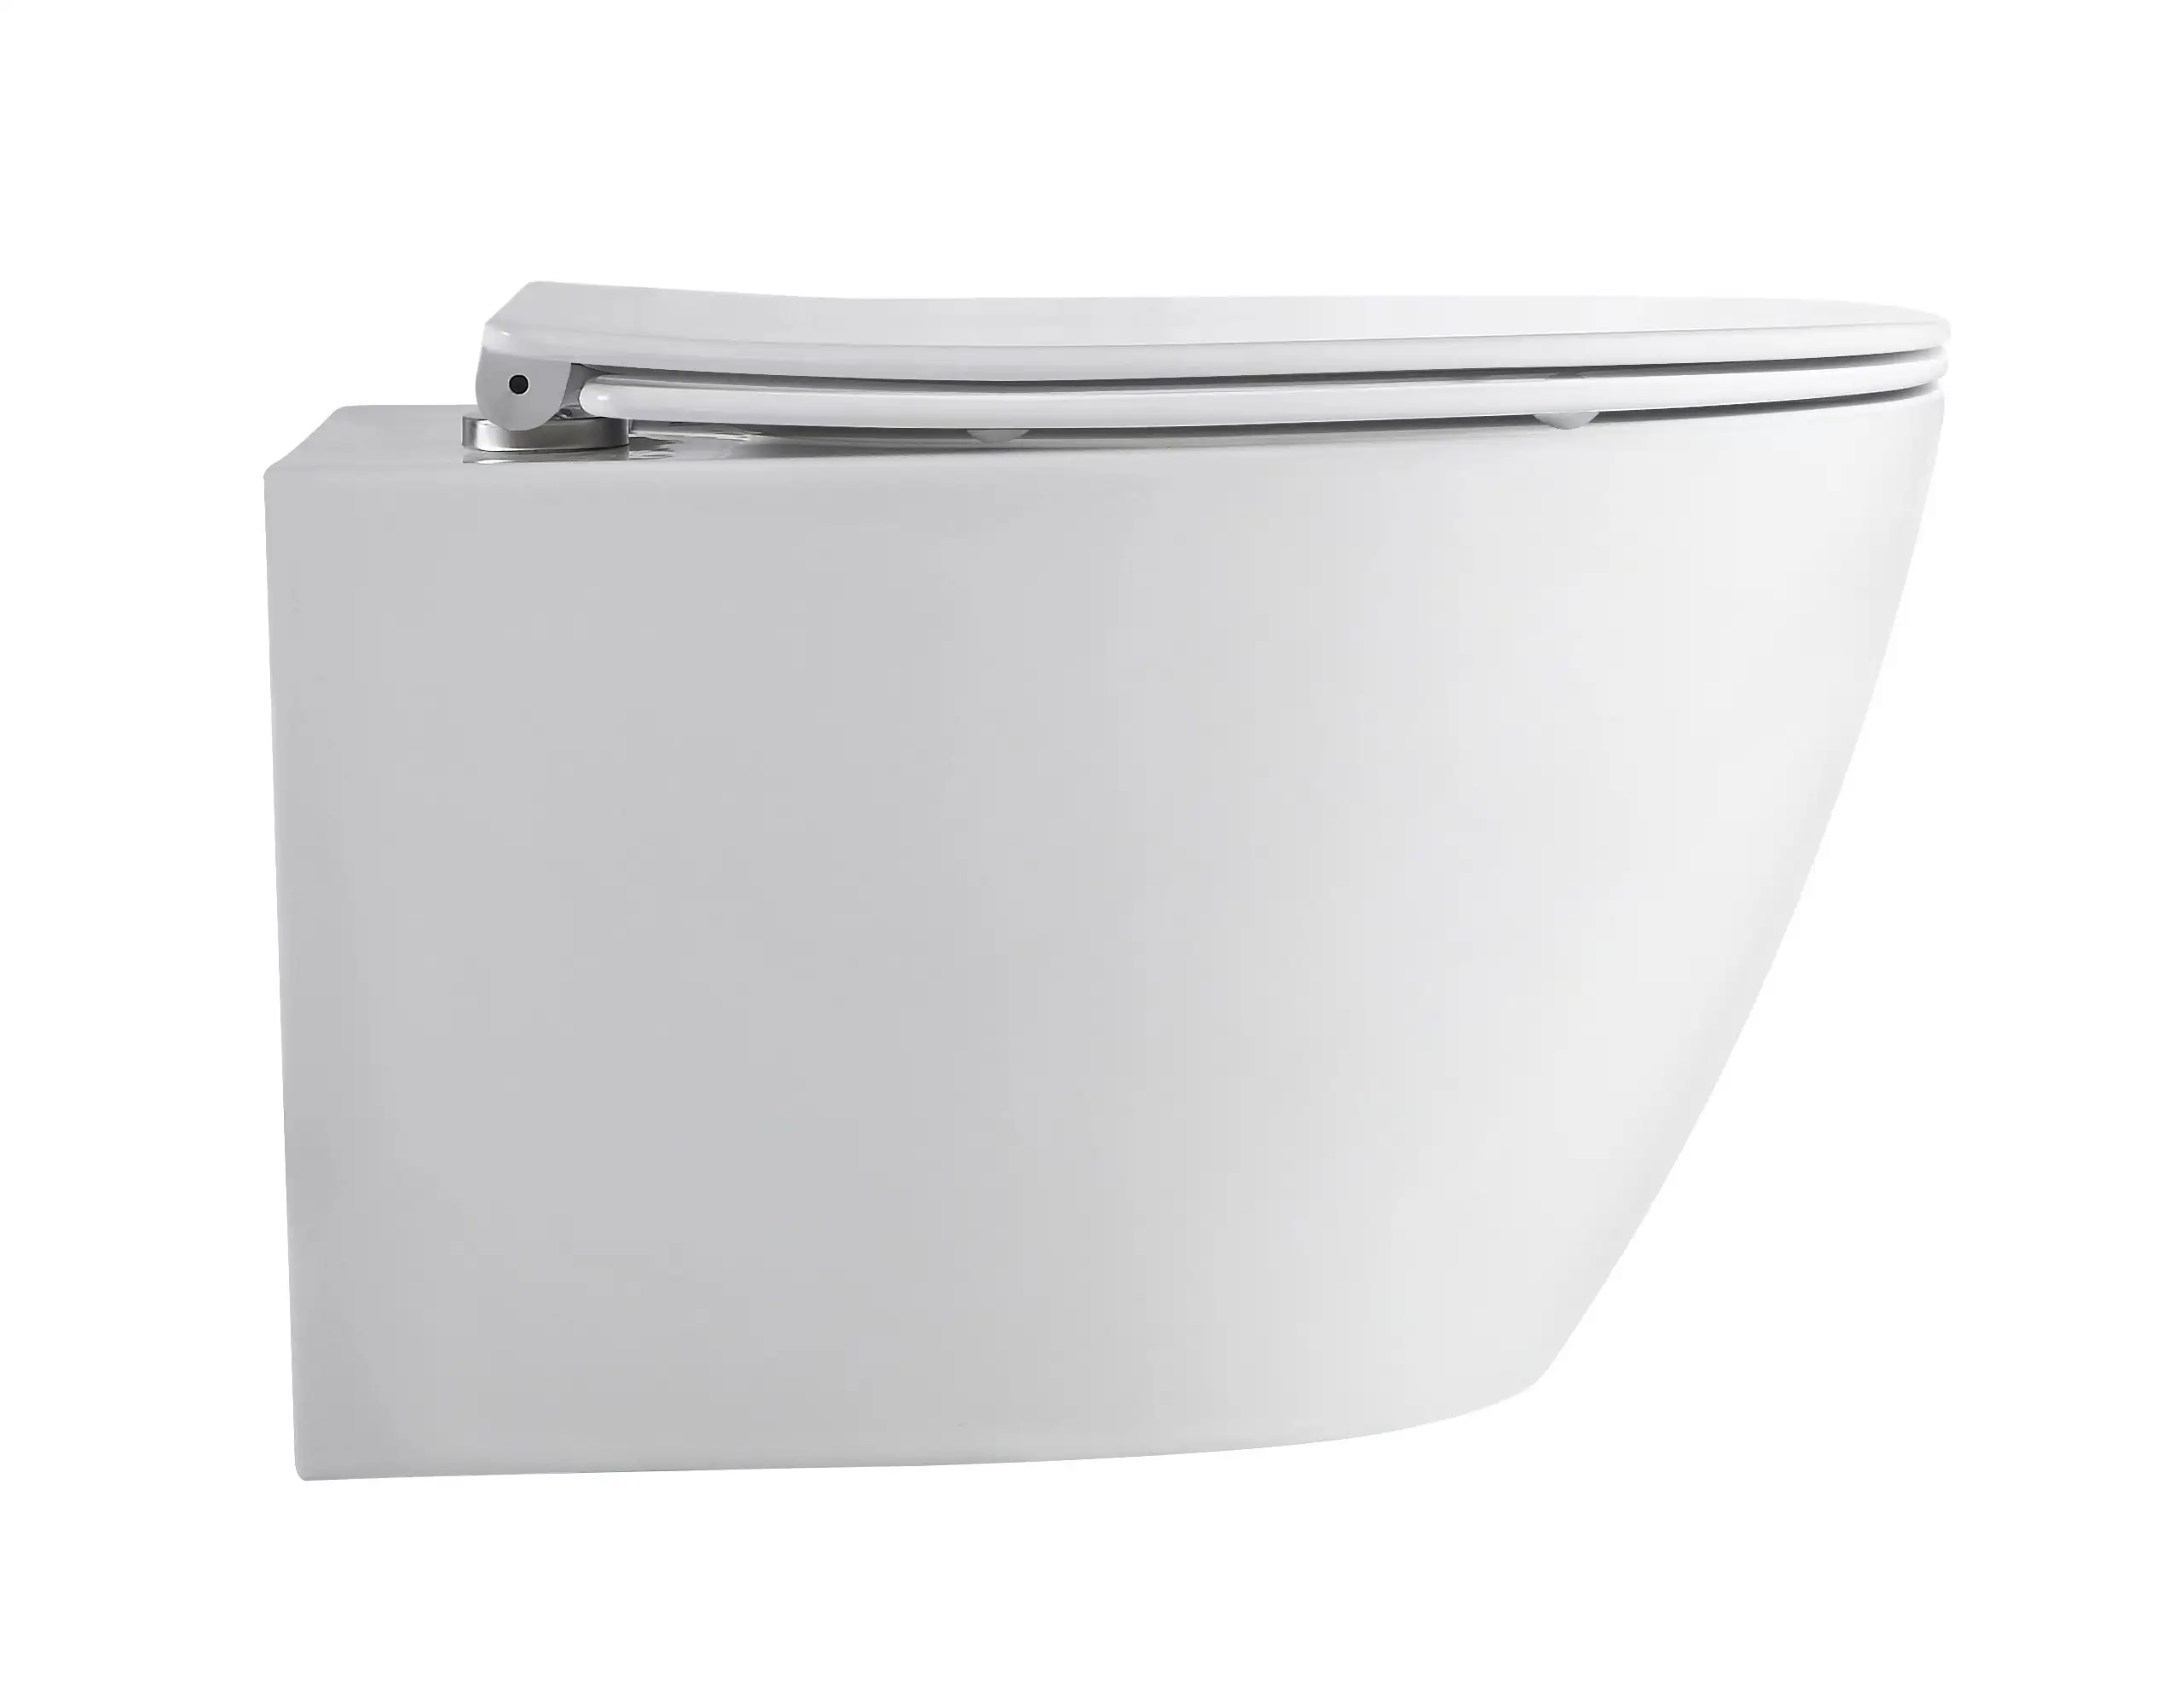 Artículos sanitarios p-trap washdown WC inodoro estándar de cerámica colgado en la pared para Baño